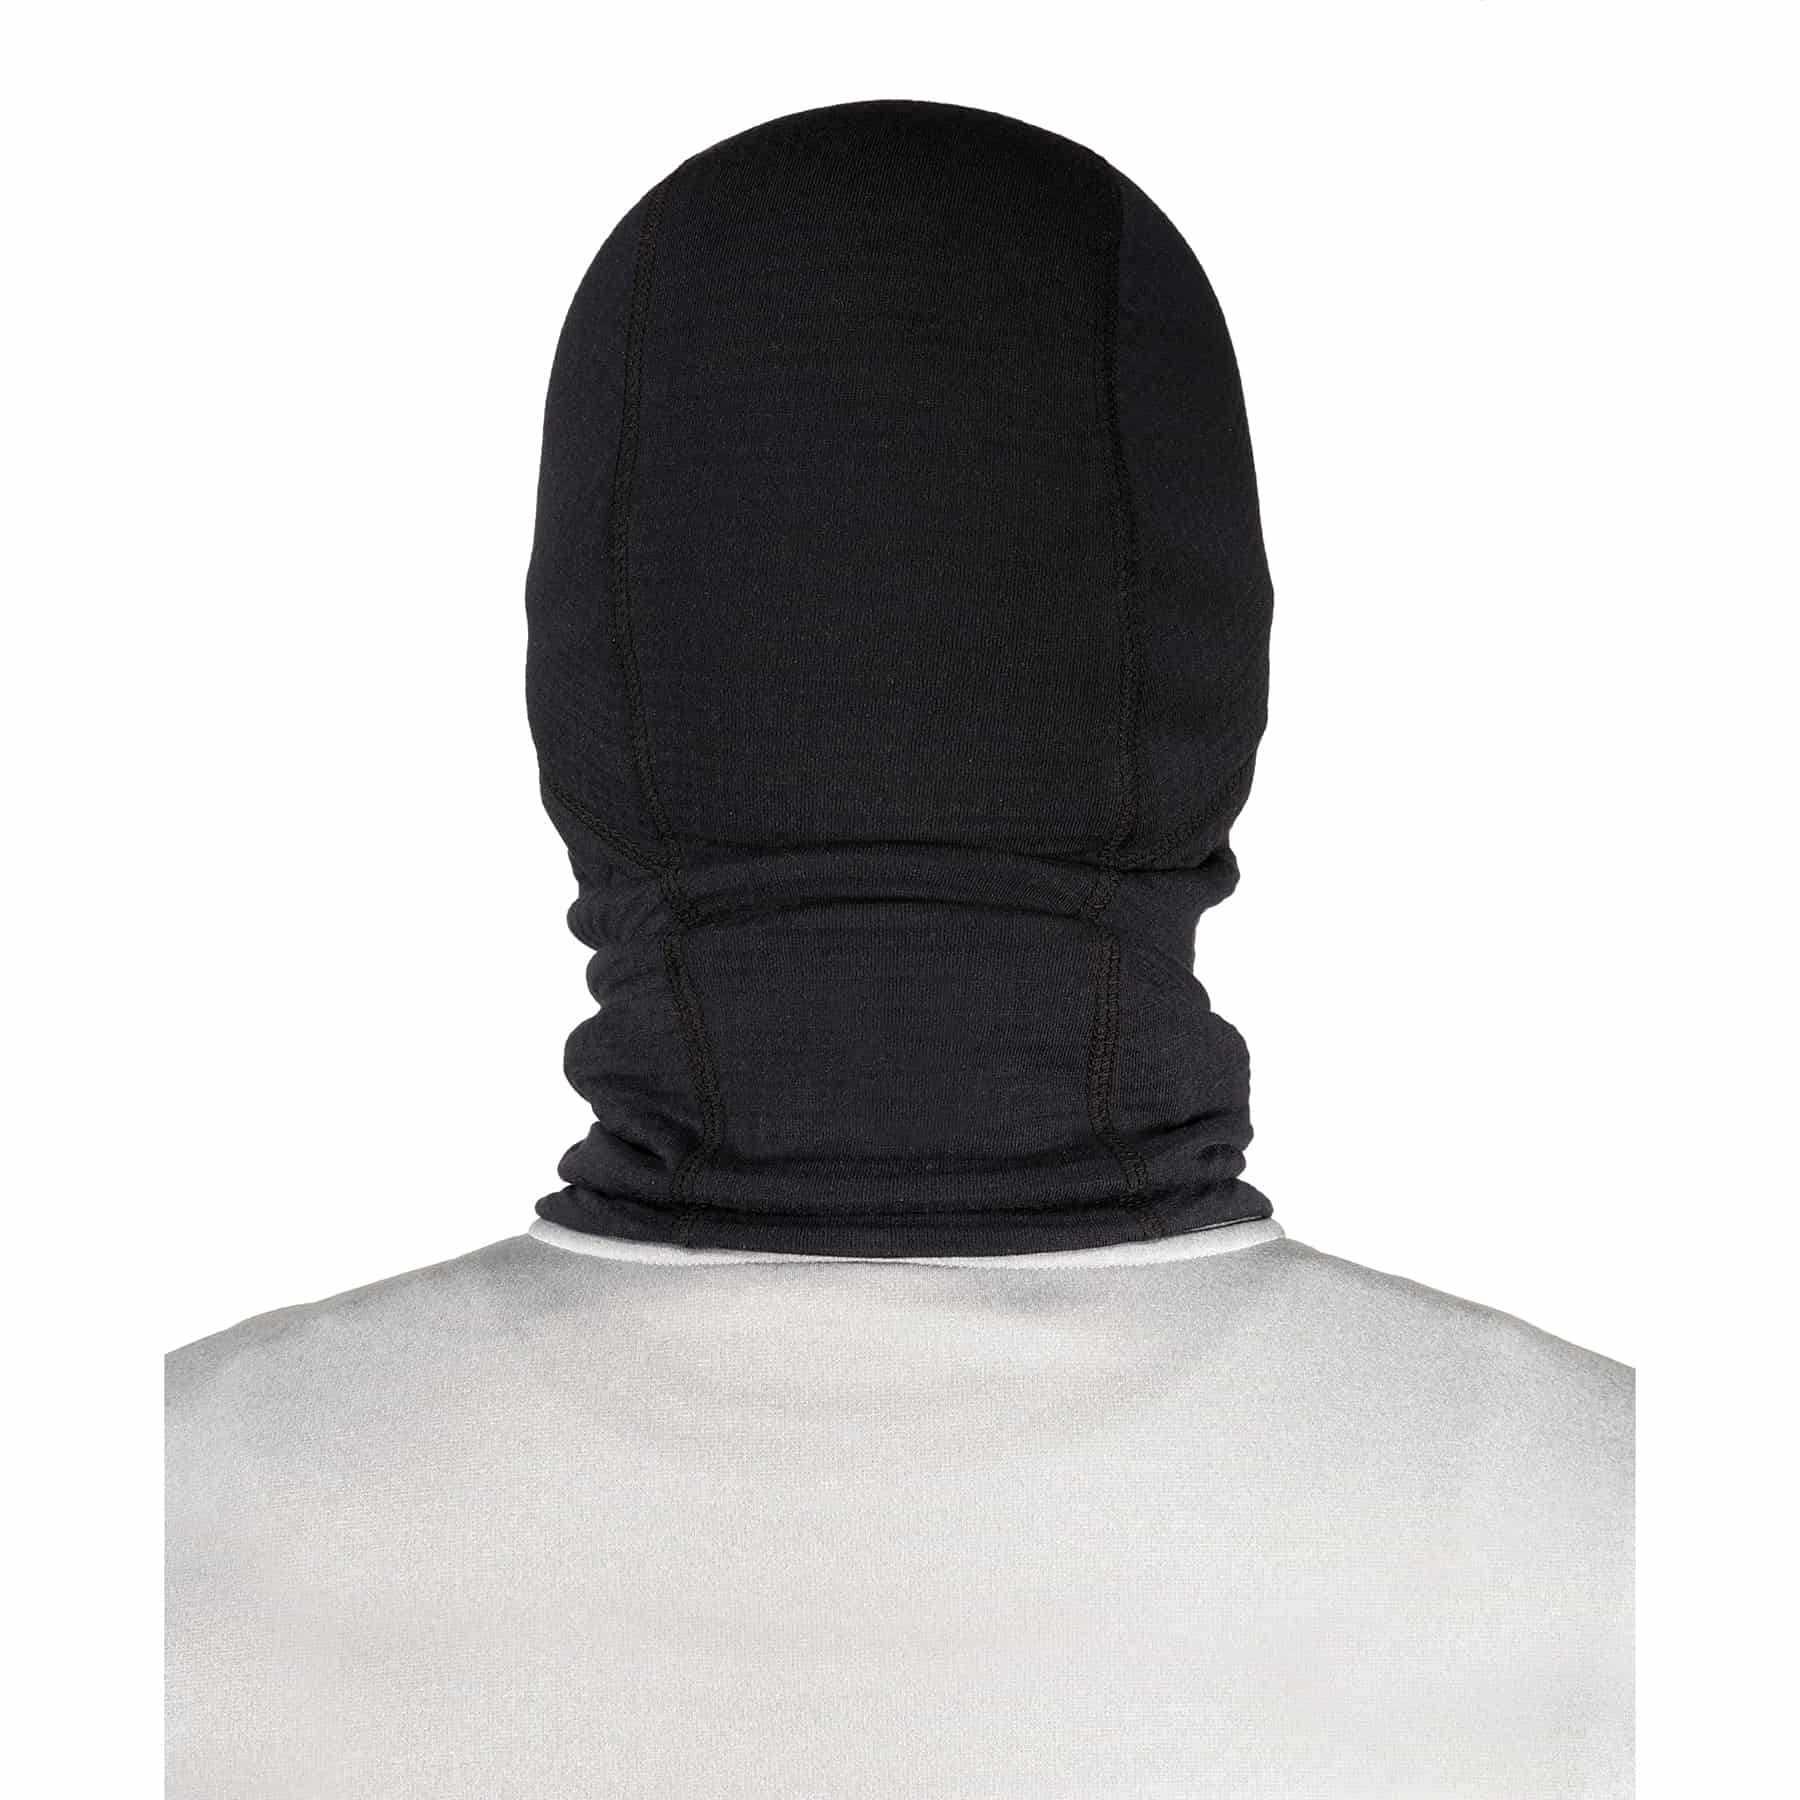 Ergodyne N-Ferno 6847 FR Balaclava Face Mask - Black